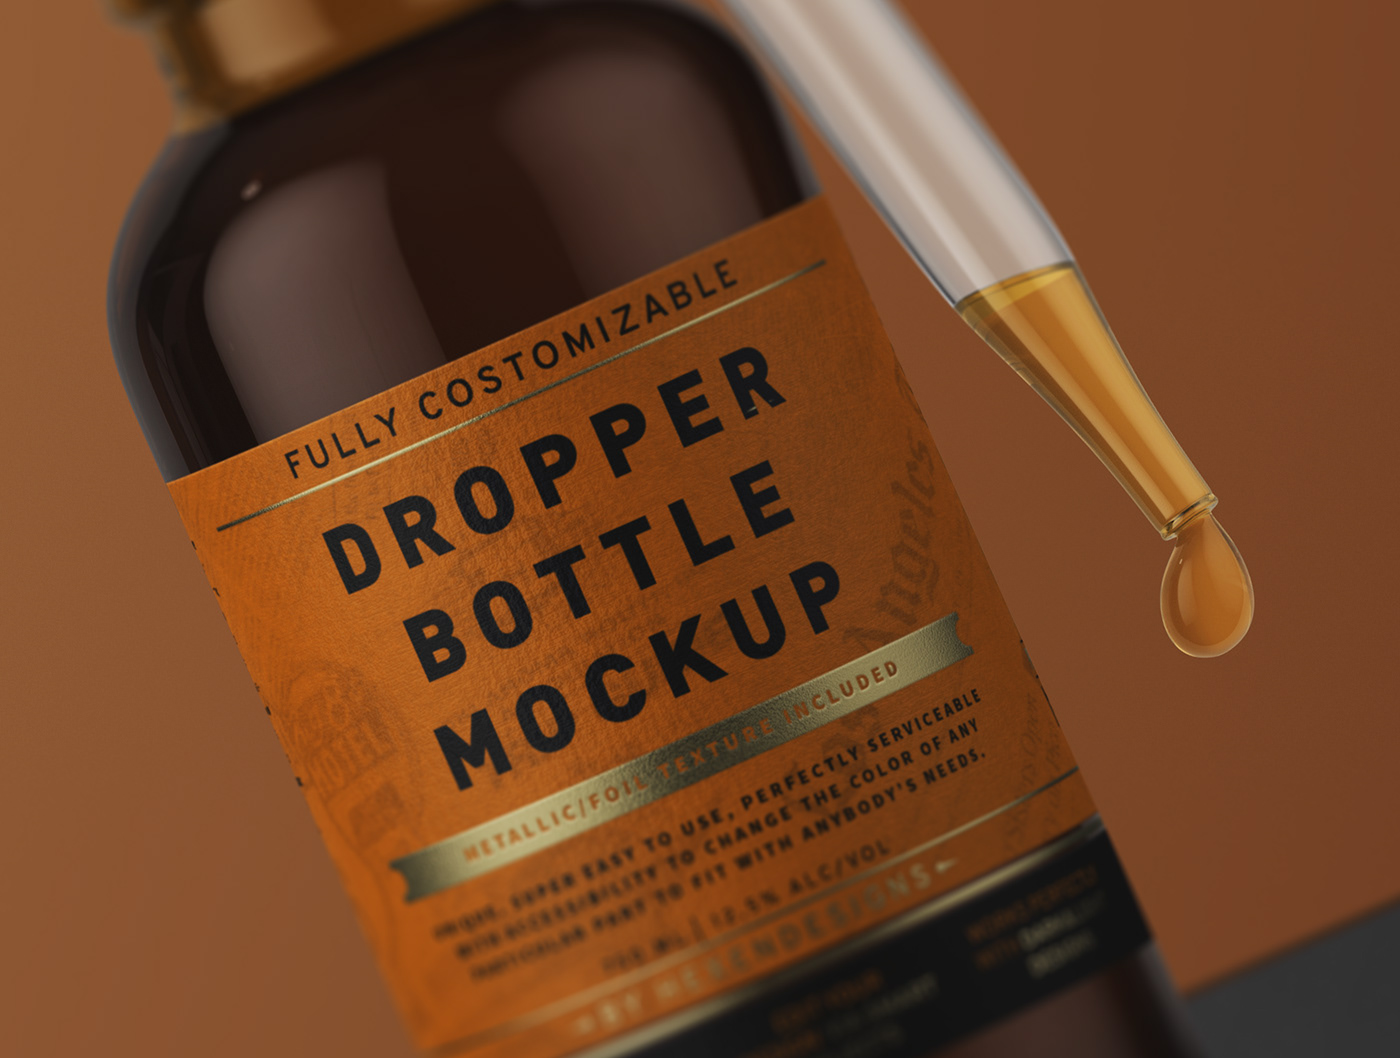 Download Dropper Bottle Mockup + Free Version on Behance